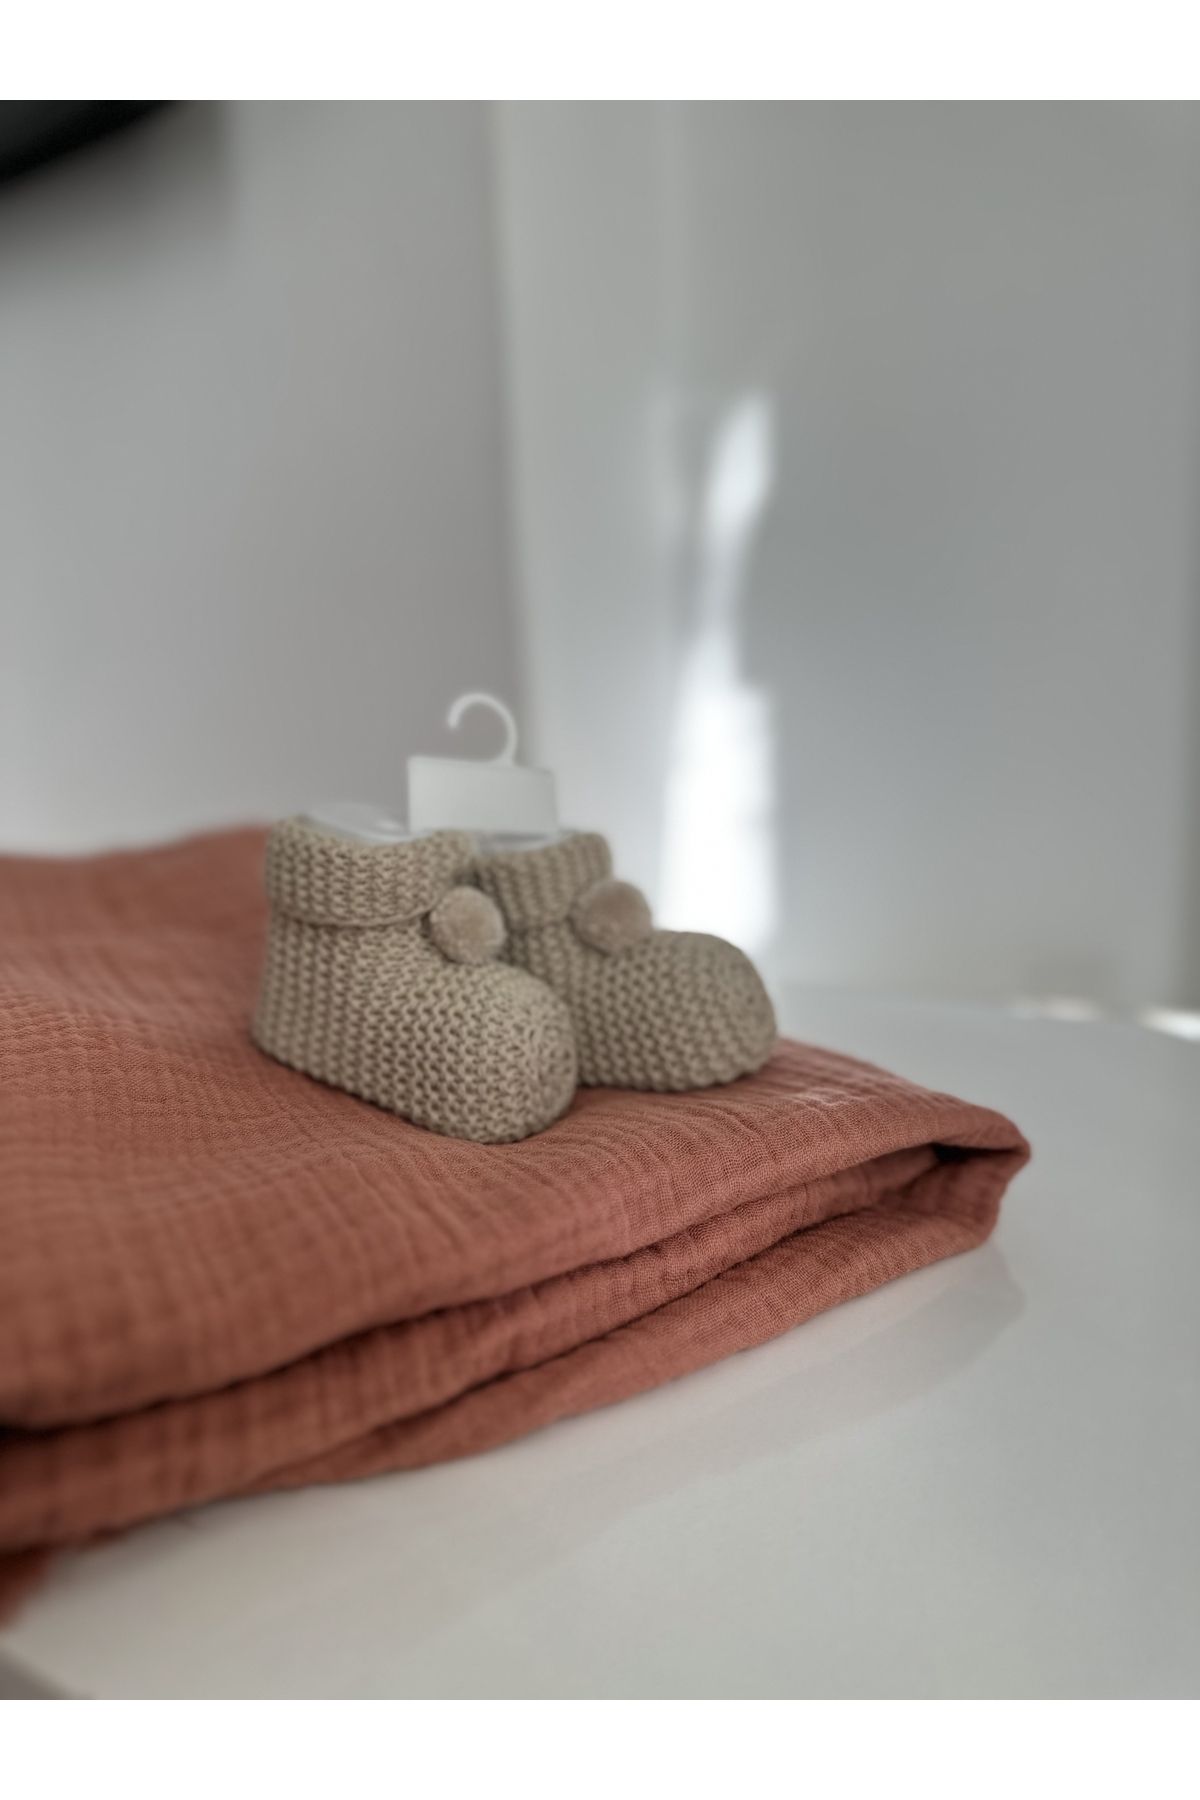 Necix's Aldiya Baby Bebek patik çorap battaniye set hediye Takım sürpriz hediyeli